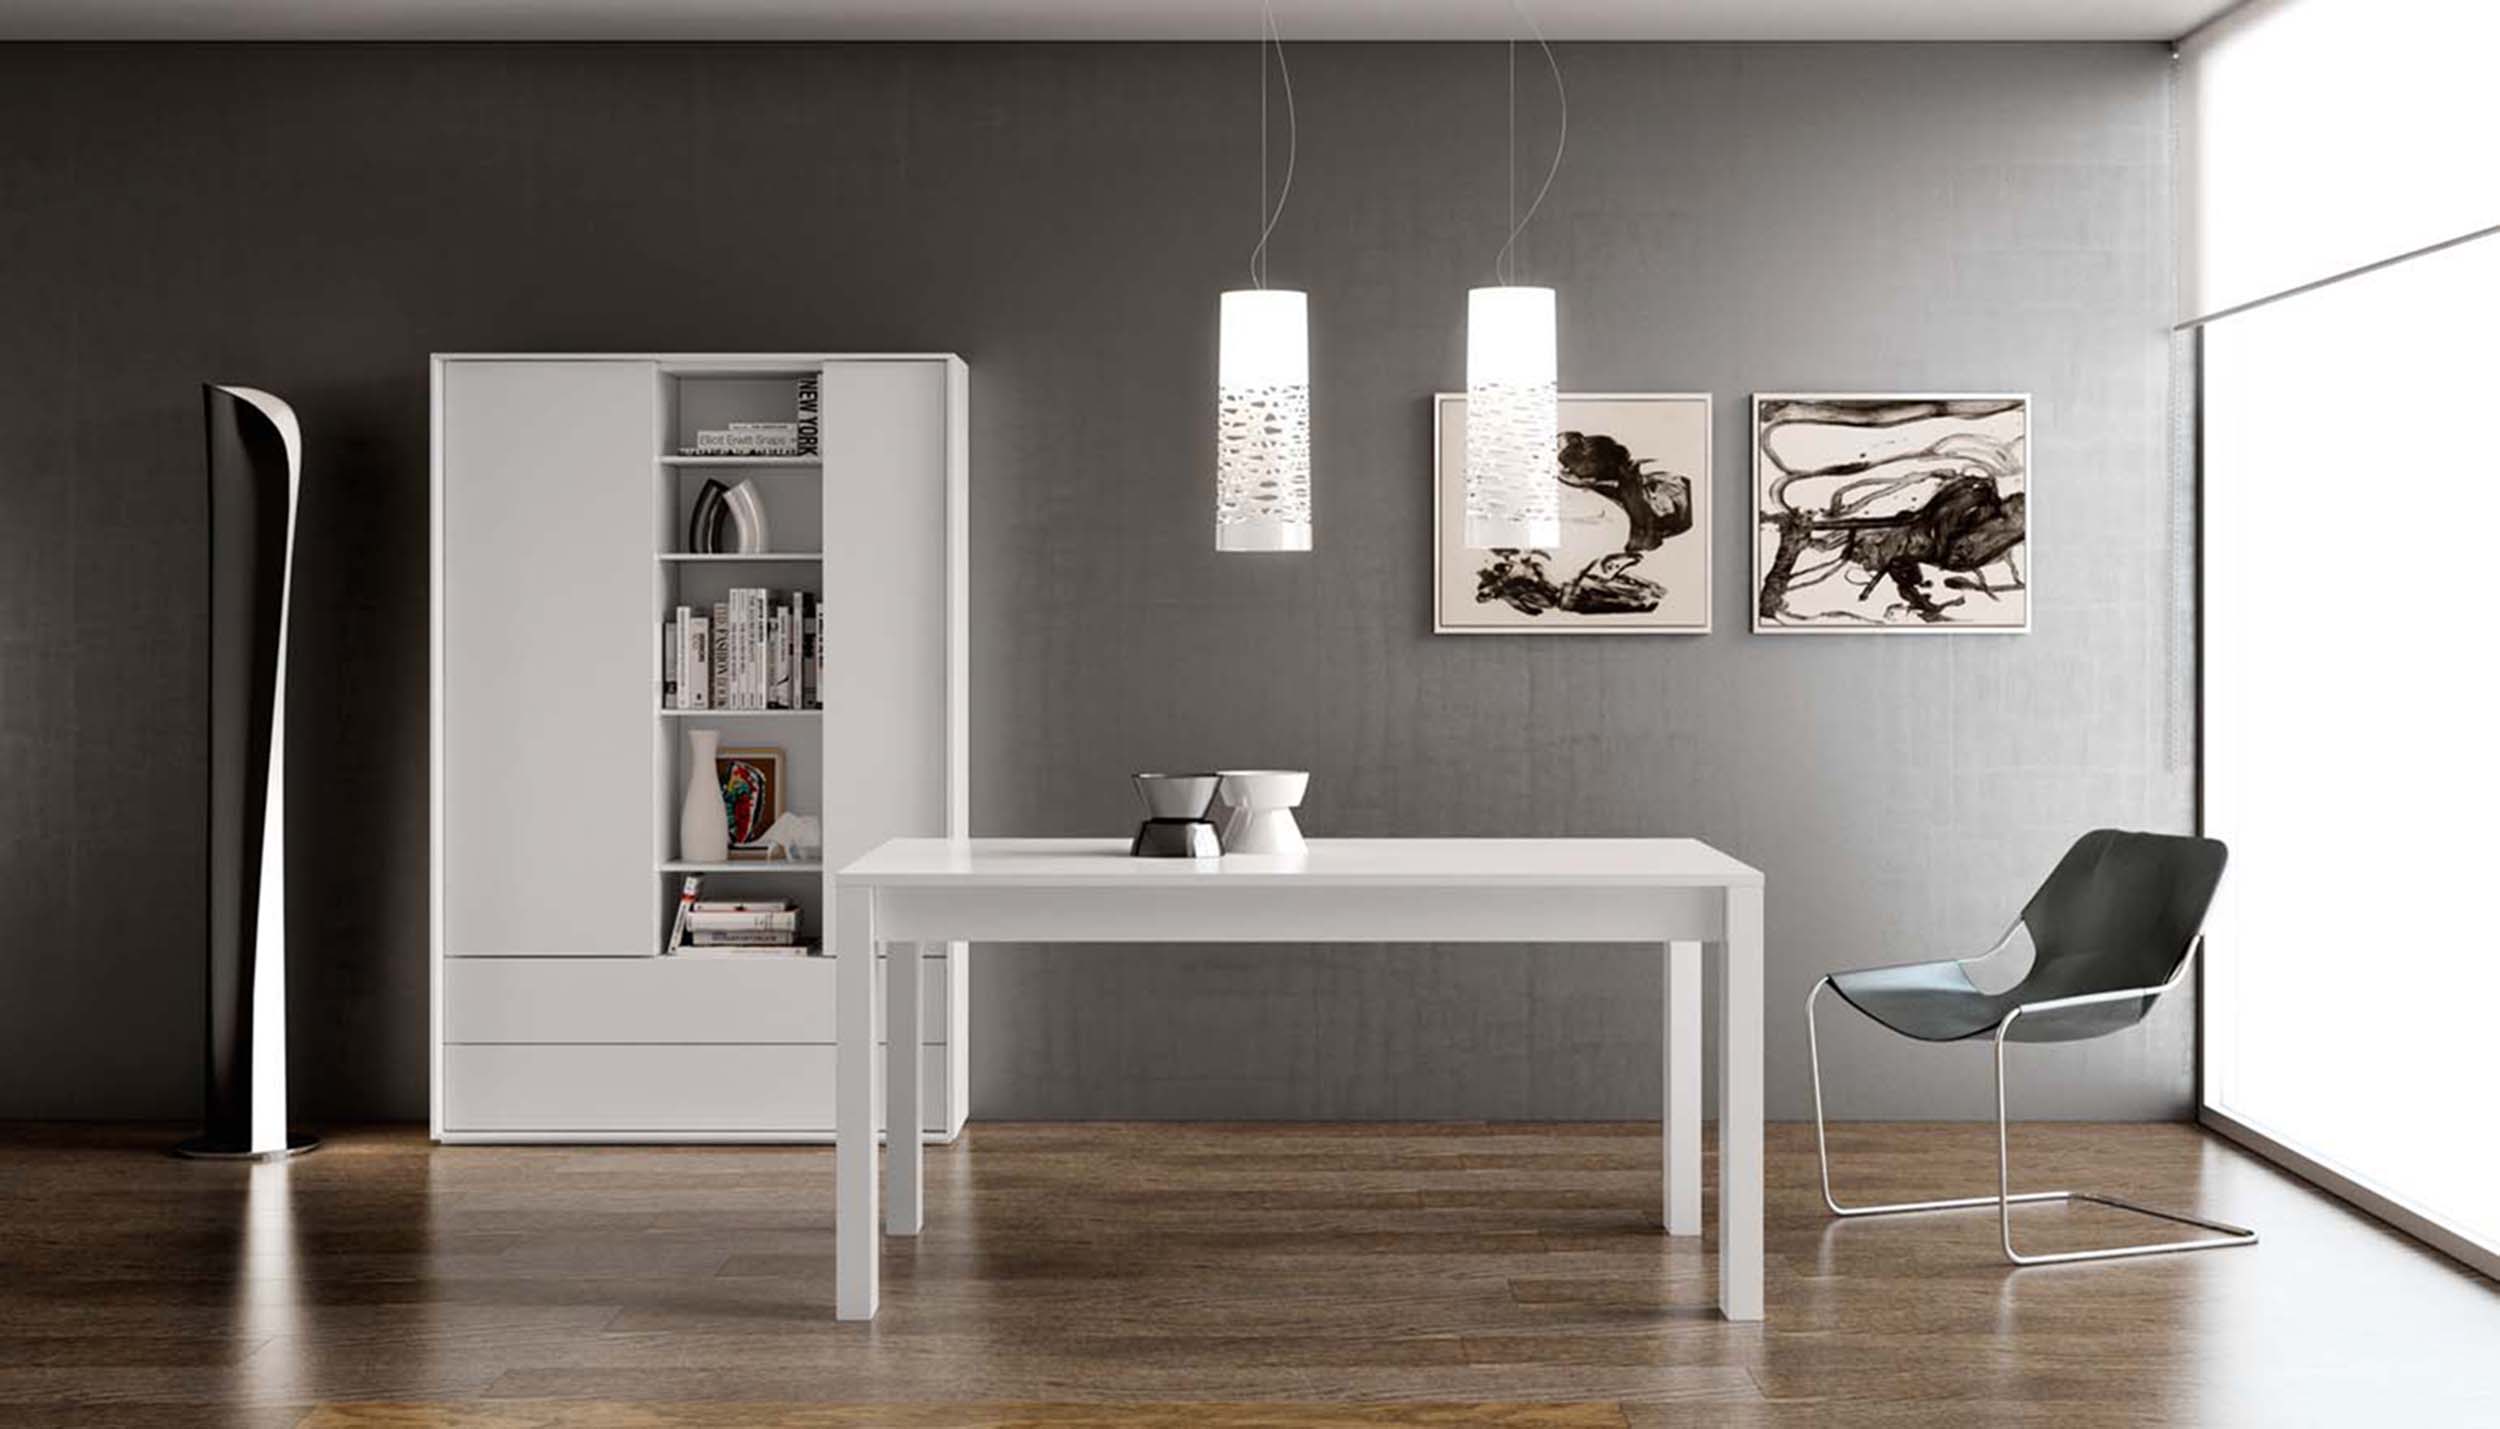 Fotografía de parte de un salón con muebles modernos minimalistas donde predomina el blanco y el gris